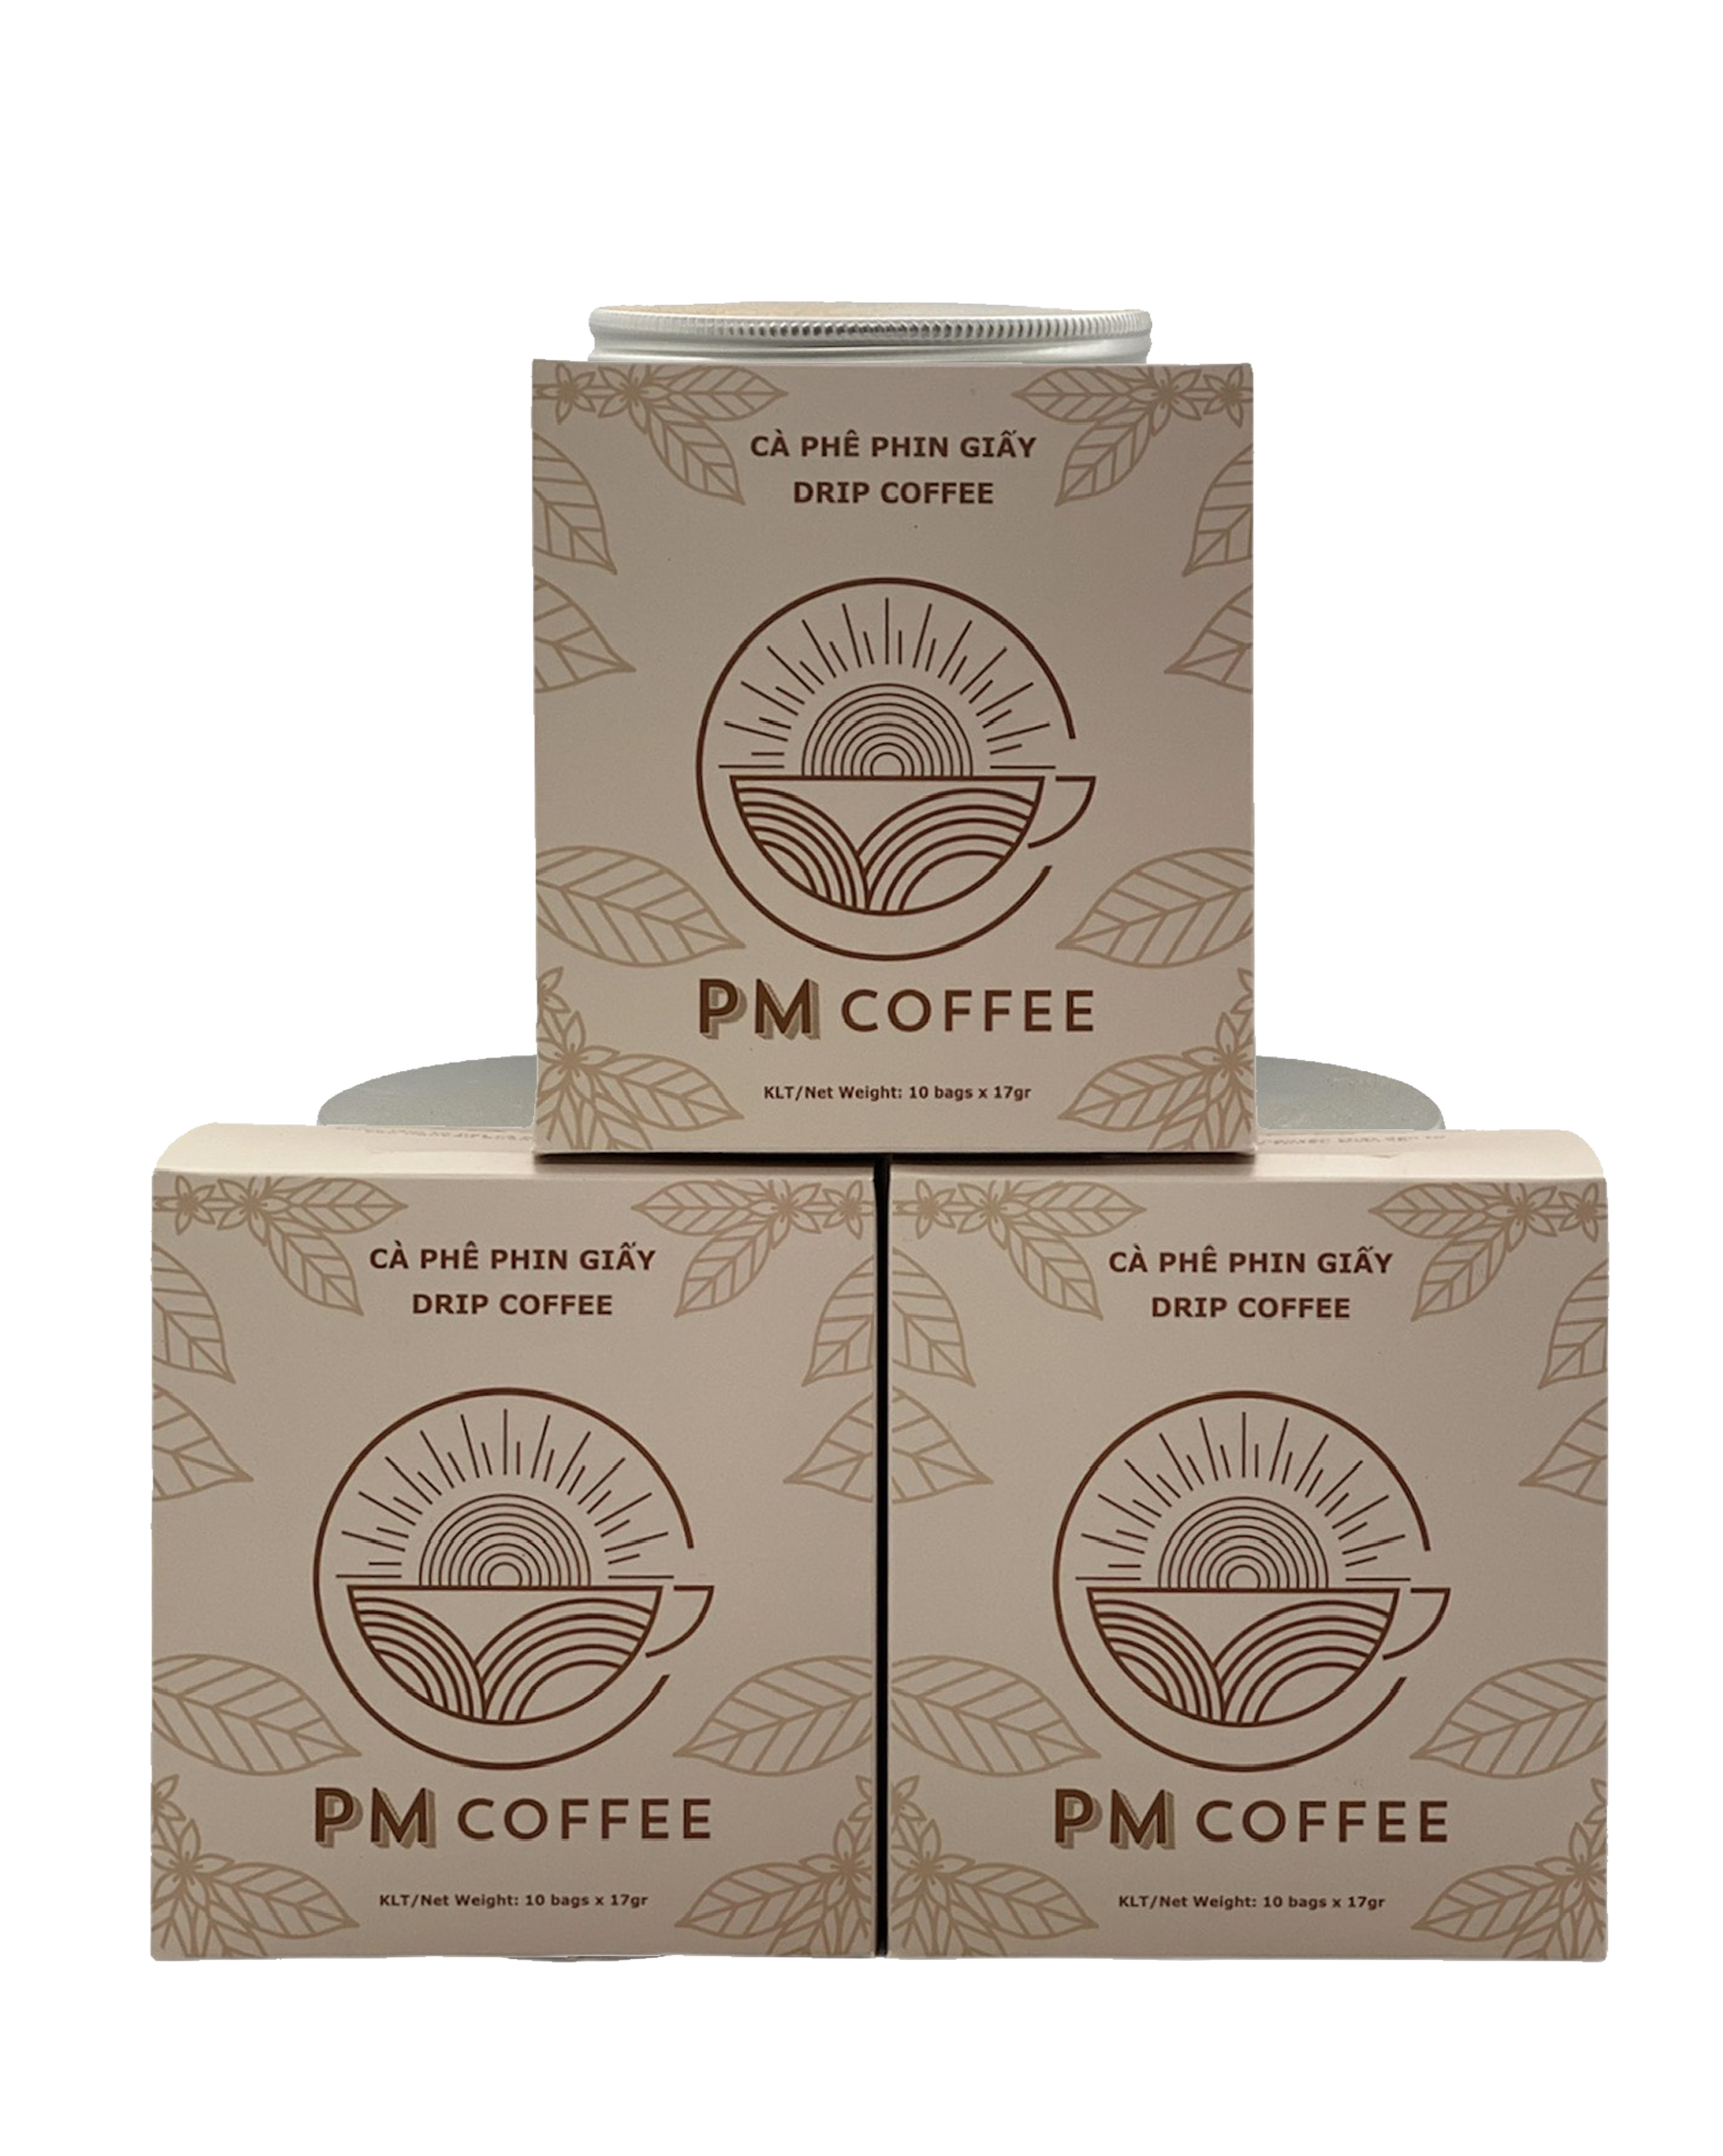 Cà phê Phin giấy PM Coffee